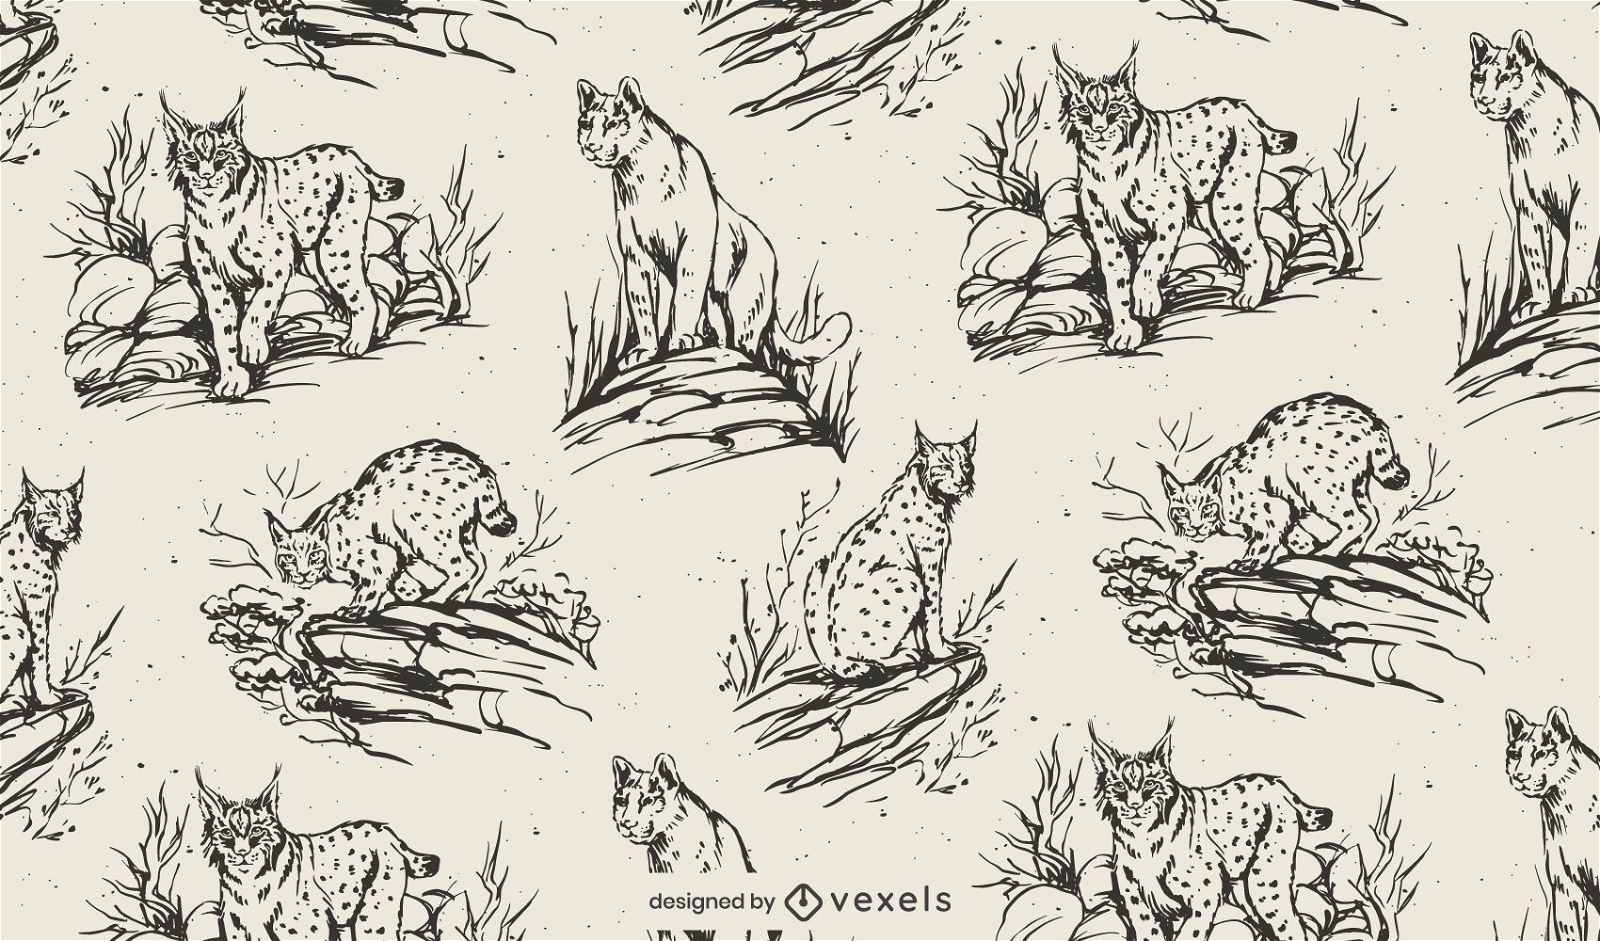 Wild animals in nature pattern design